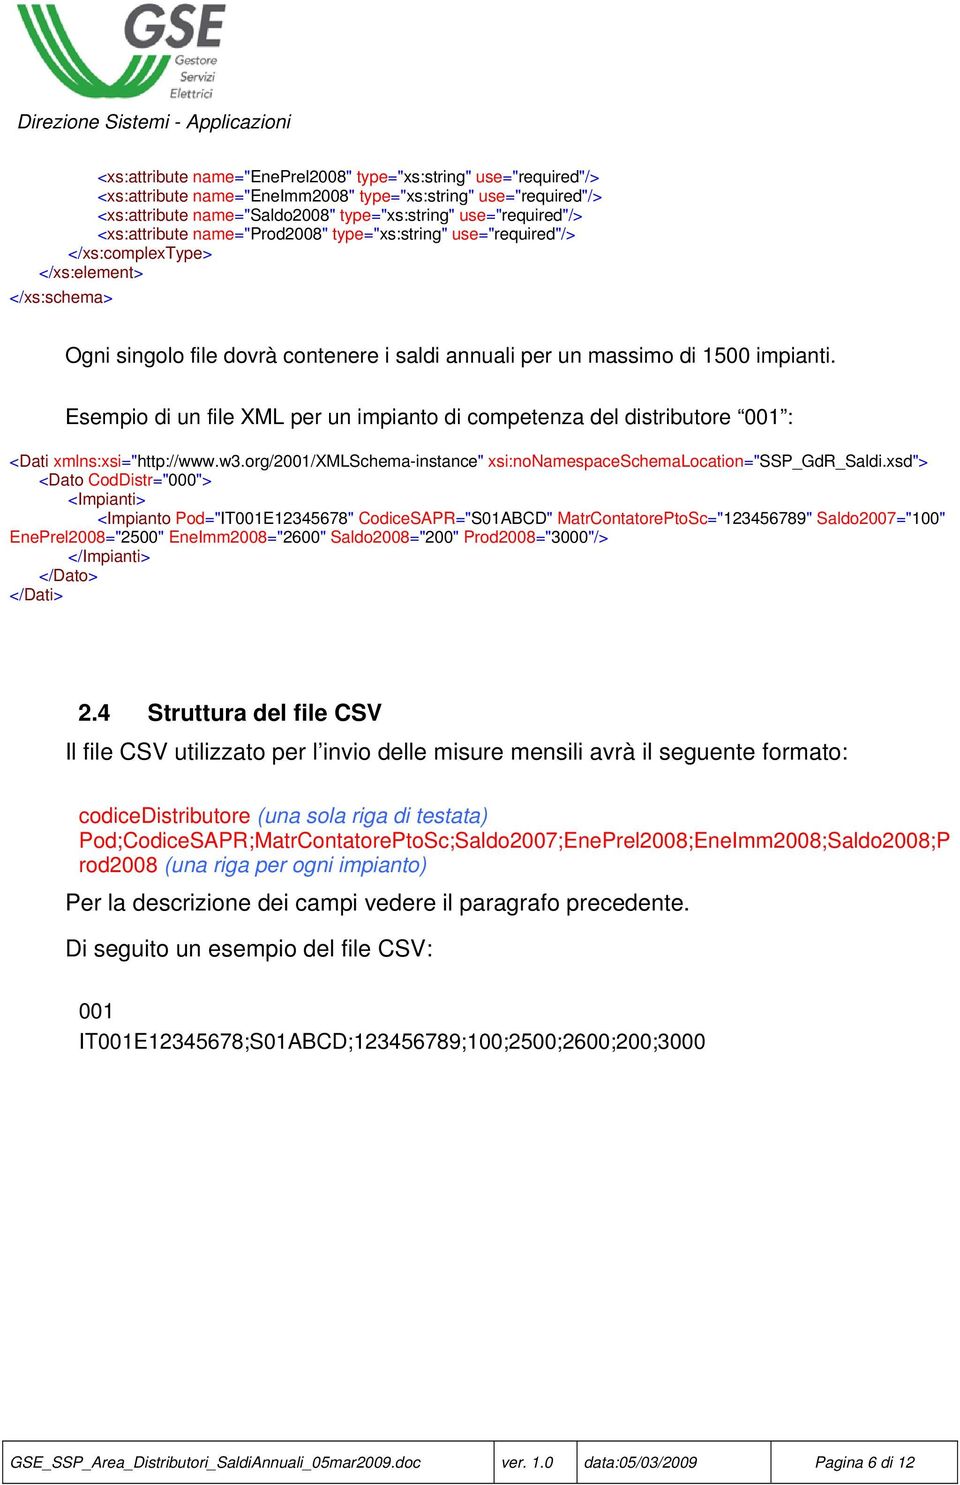 Esempio di un file XML per un impianto di competenza del distributore 001 : <Dati xmlns:xsi="http://www.w3.org/2001/xmlschema-instance" xsi:nonamespaceschemalocation="ssp_gdr_saldi.